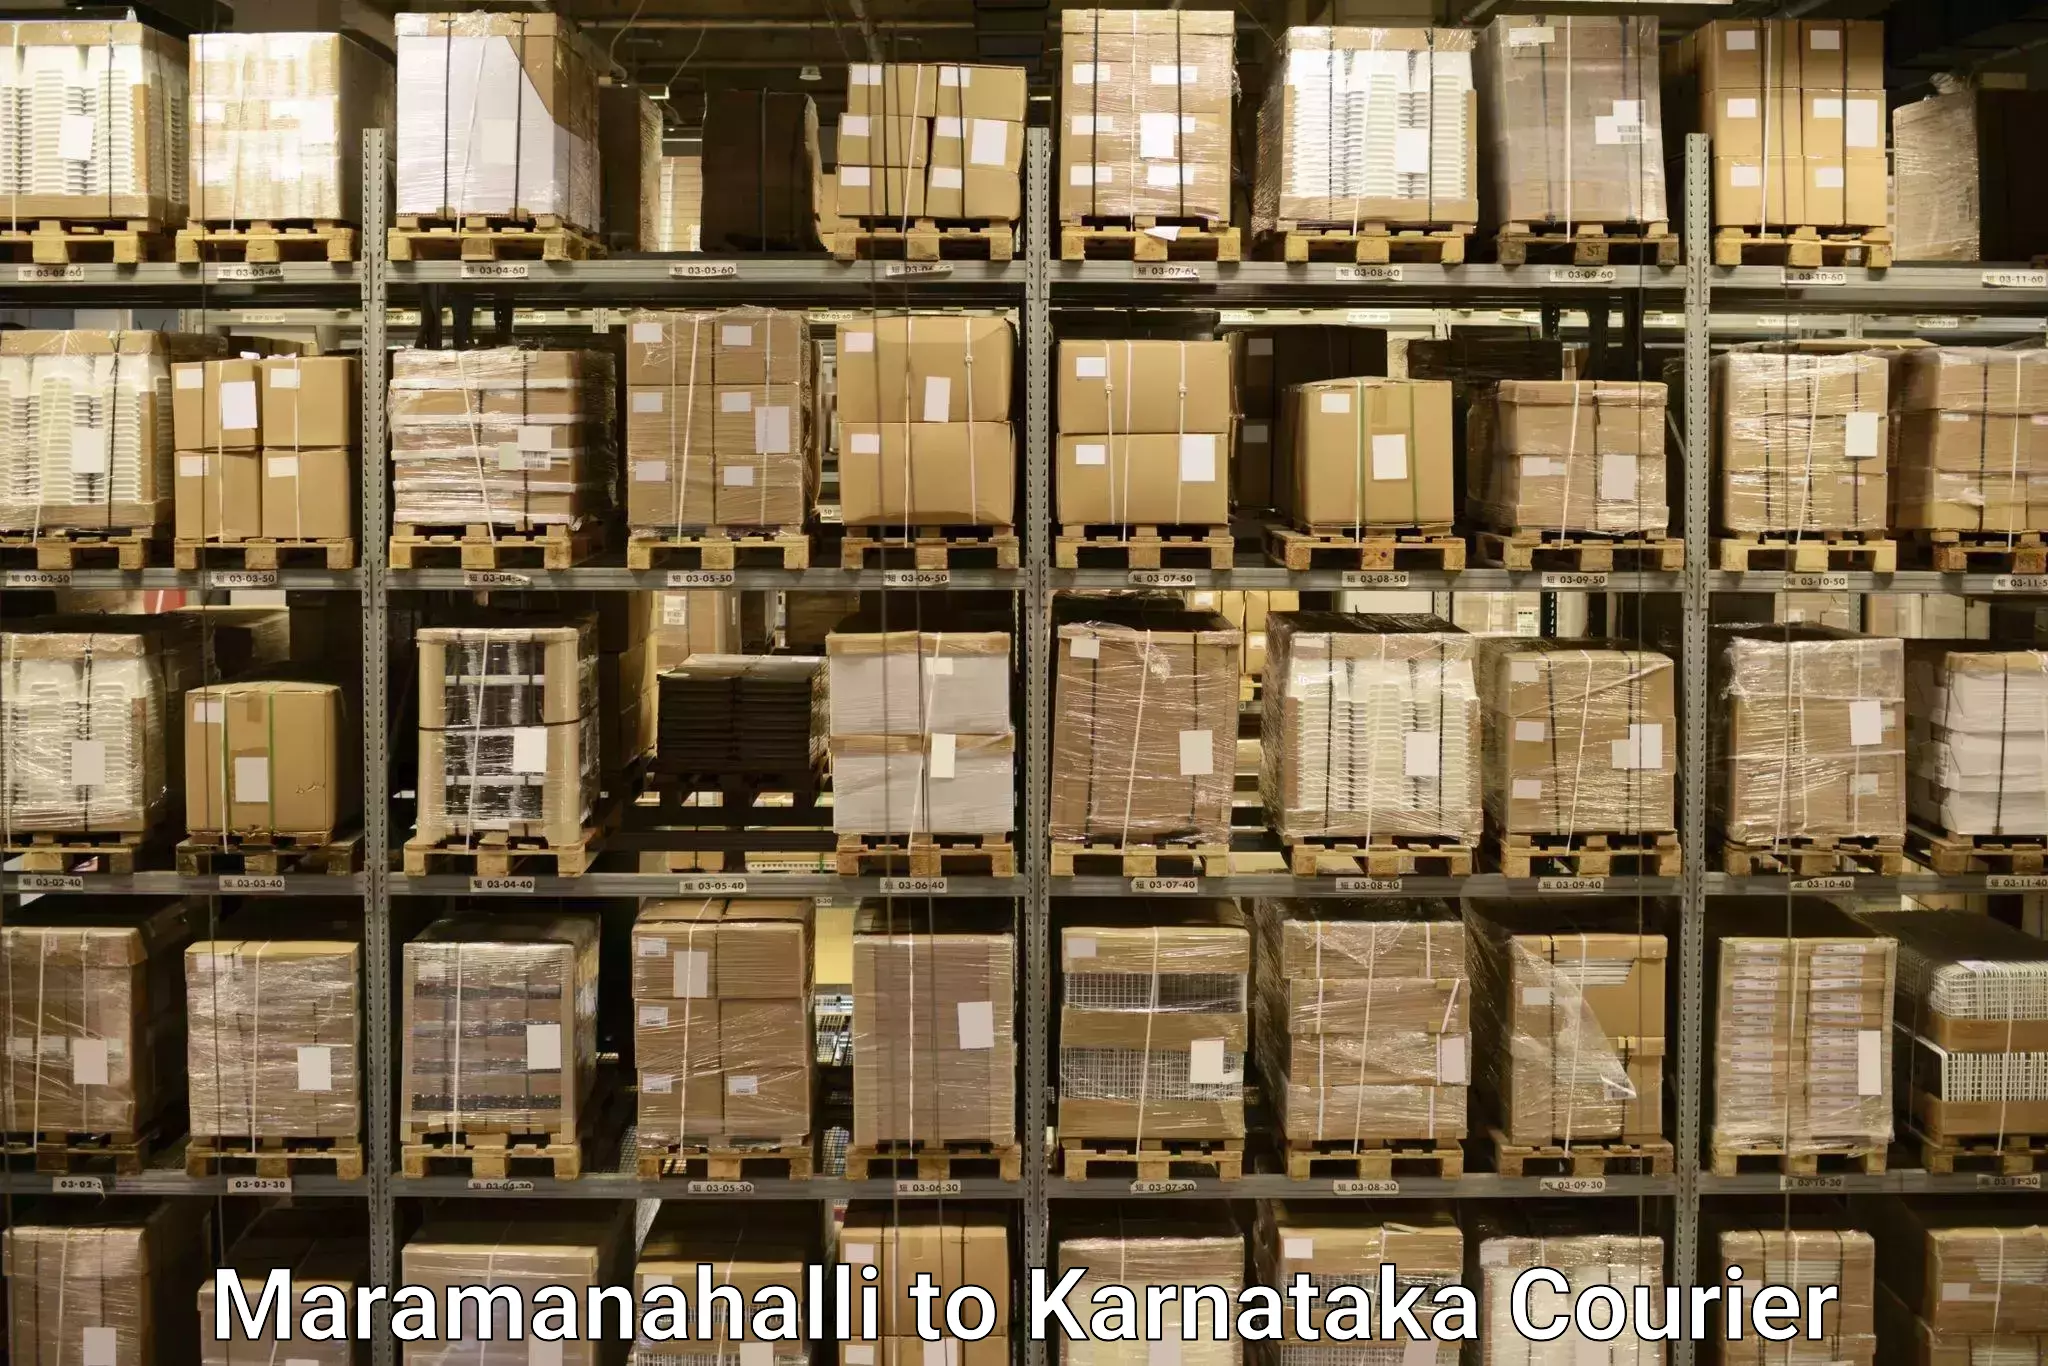 Baggage shipping service Maramanahalli to Karwar